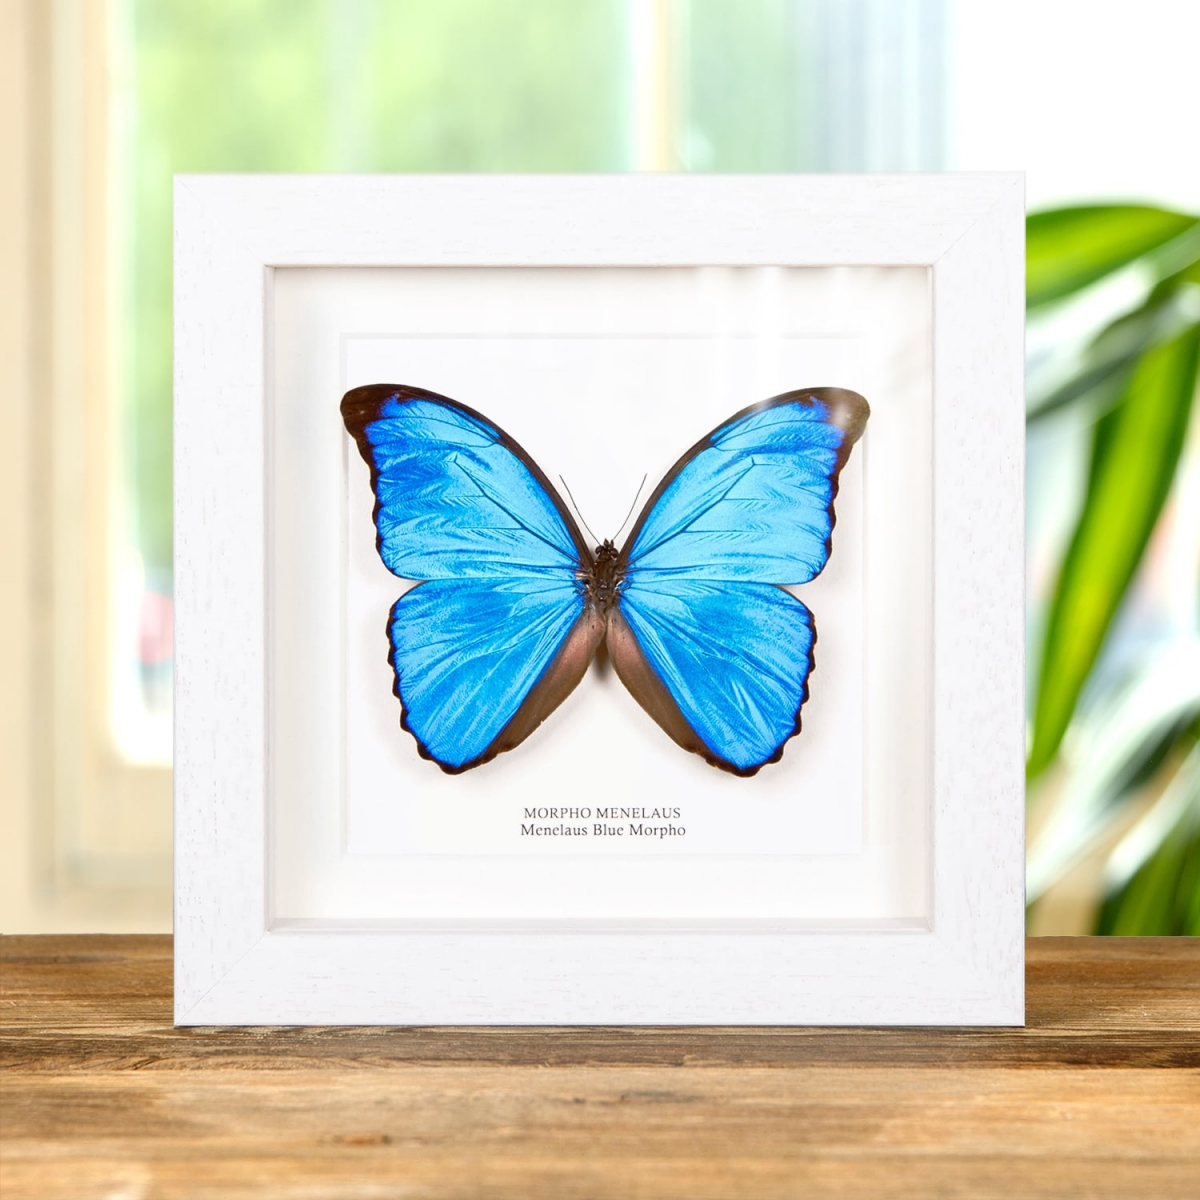 Menelaus Blue Morpho Butterfly in Box Frame (Morpho menelaus)